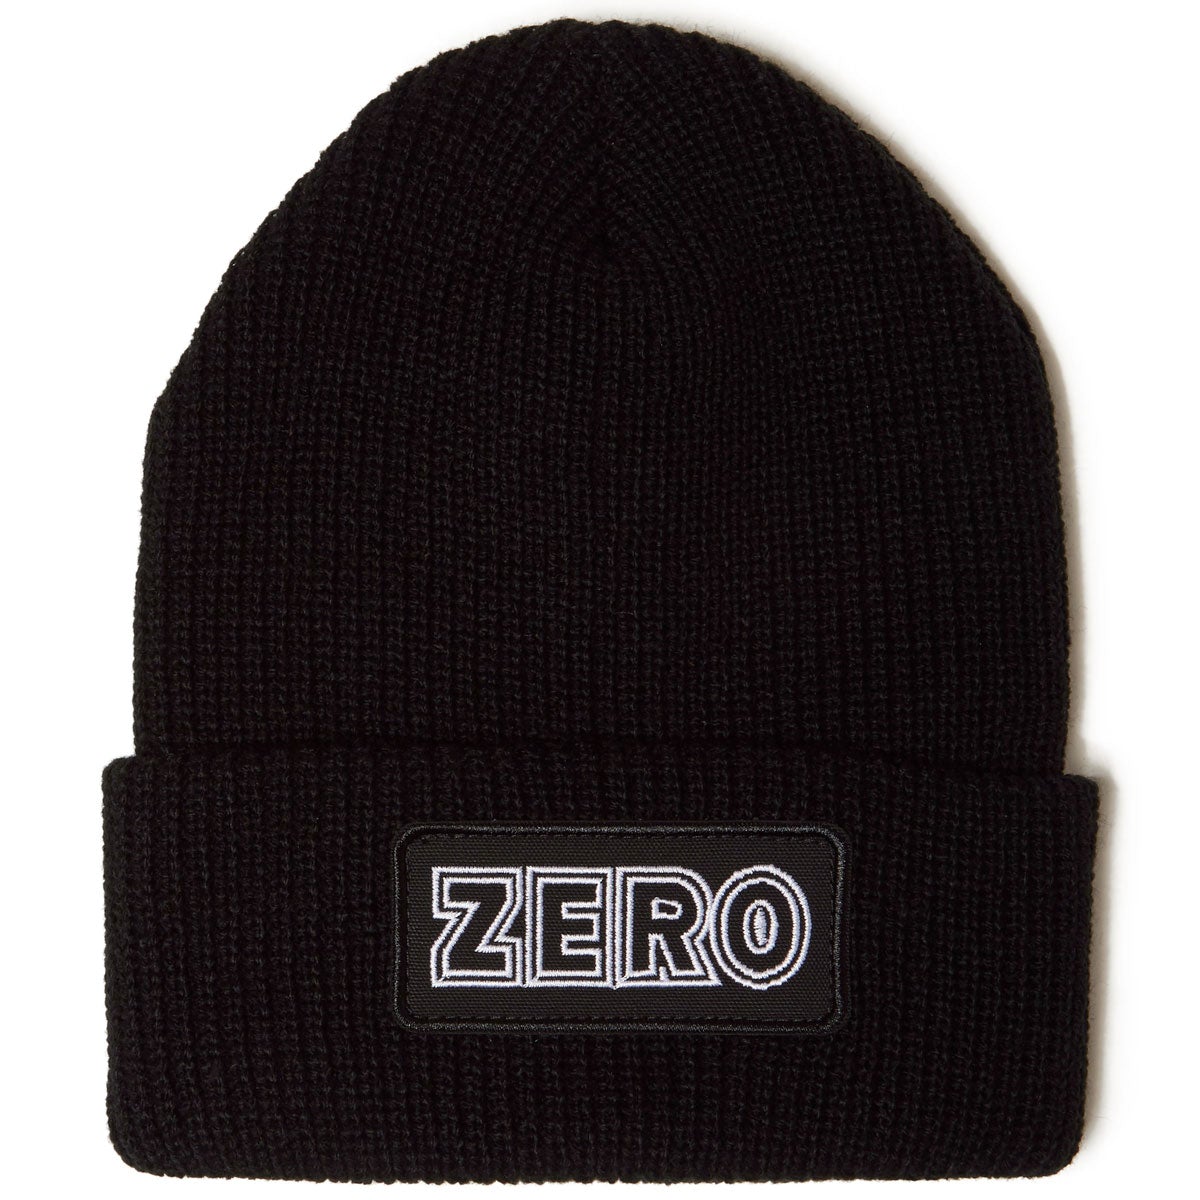 Zero Bold Patch Beanie - Black image 1